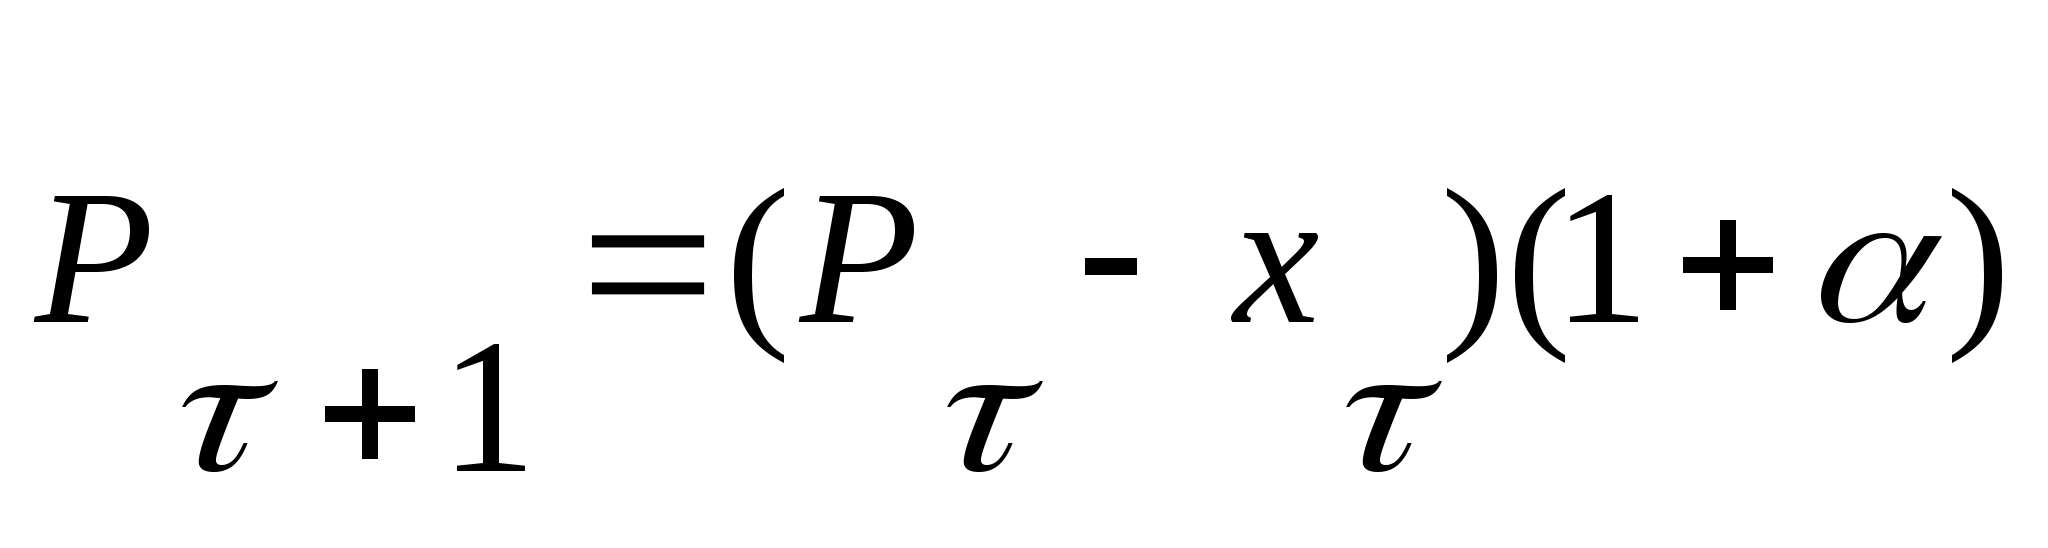 формула маклорена с остаточным членов в форме пеано фото 79